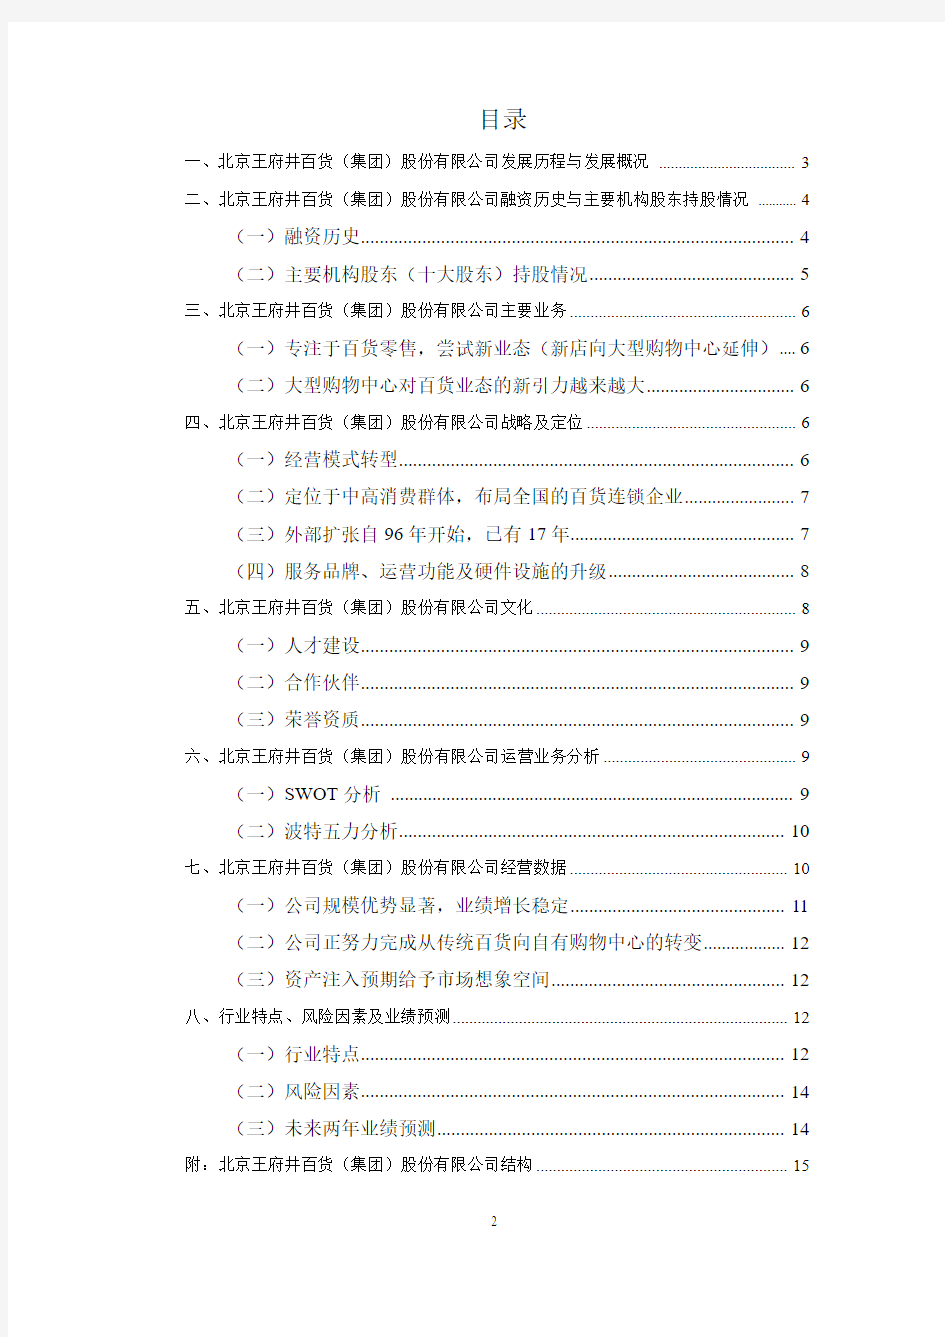 关于北京王府井百货(集团)股份有限公司的分析研究报告